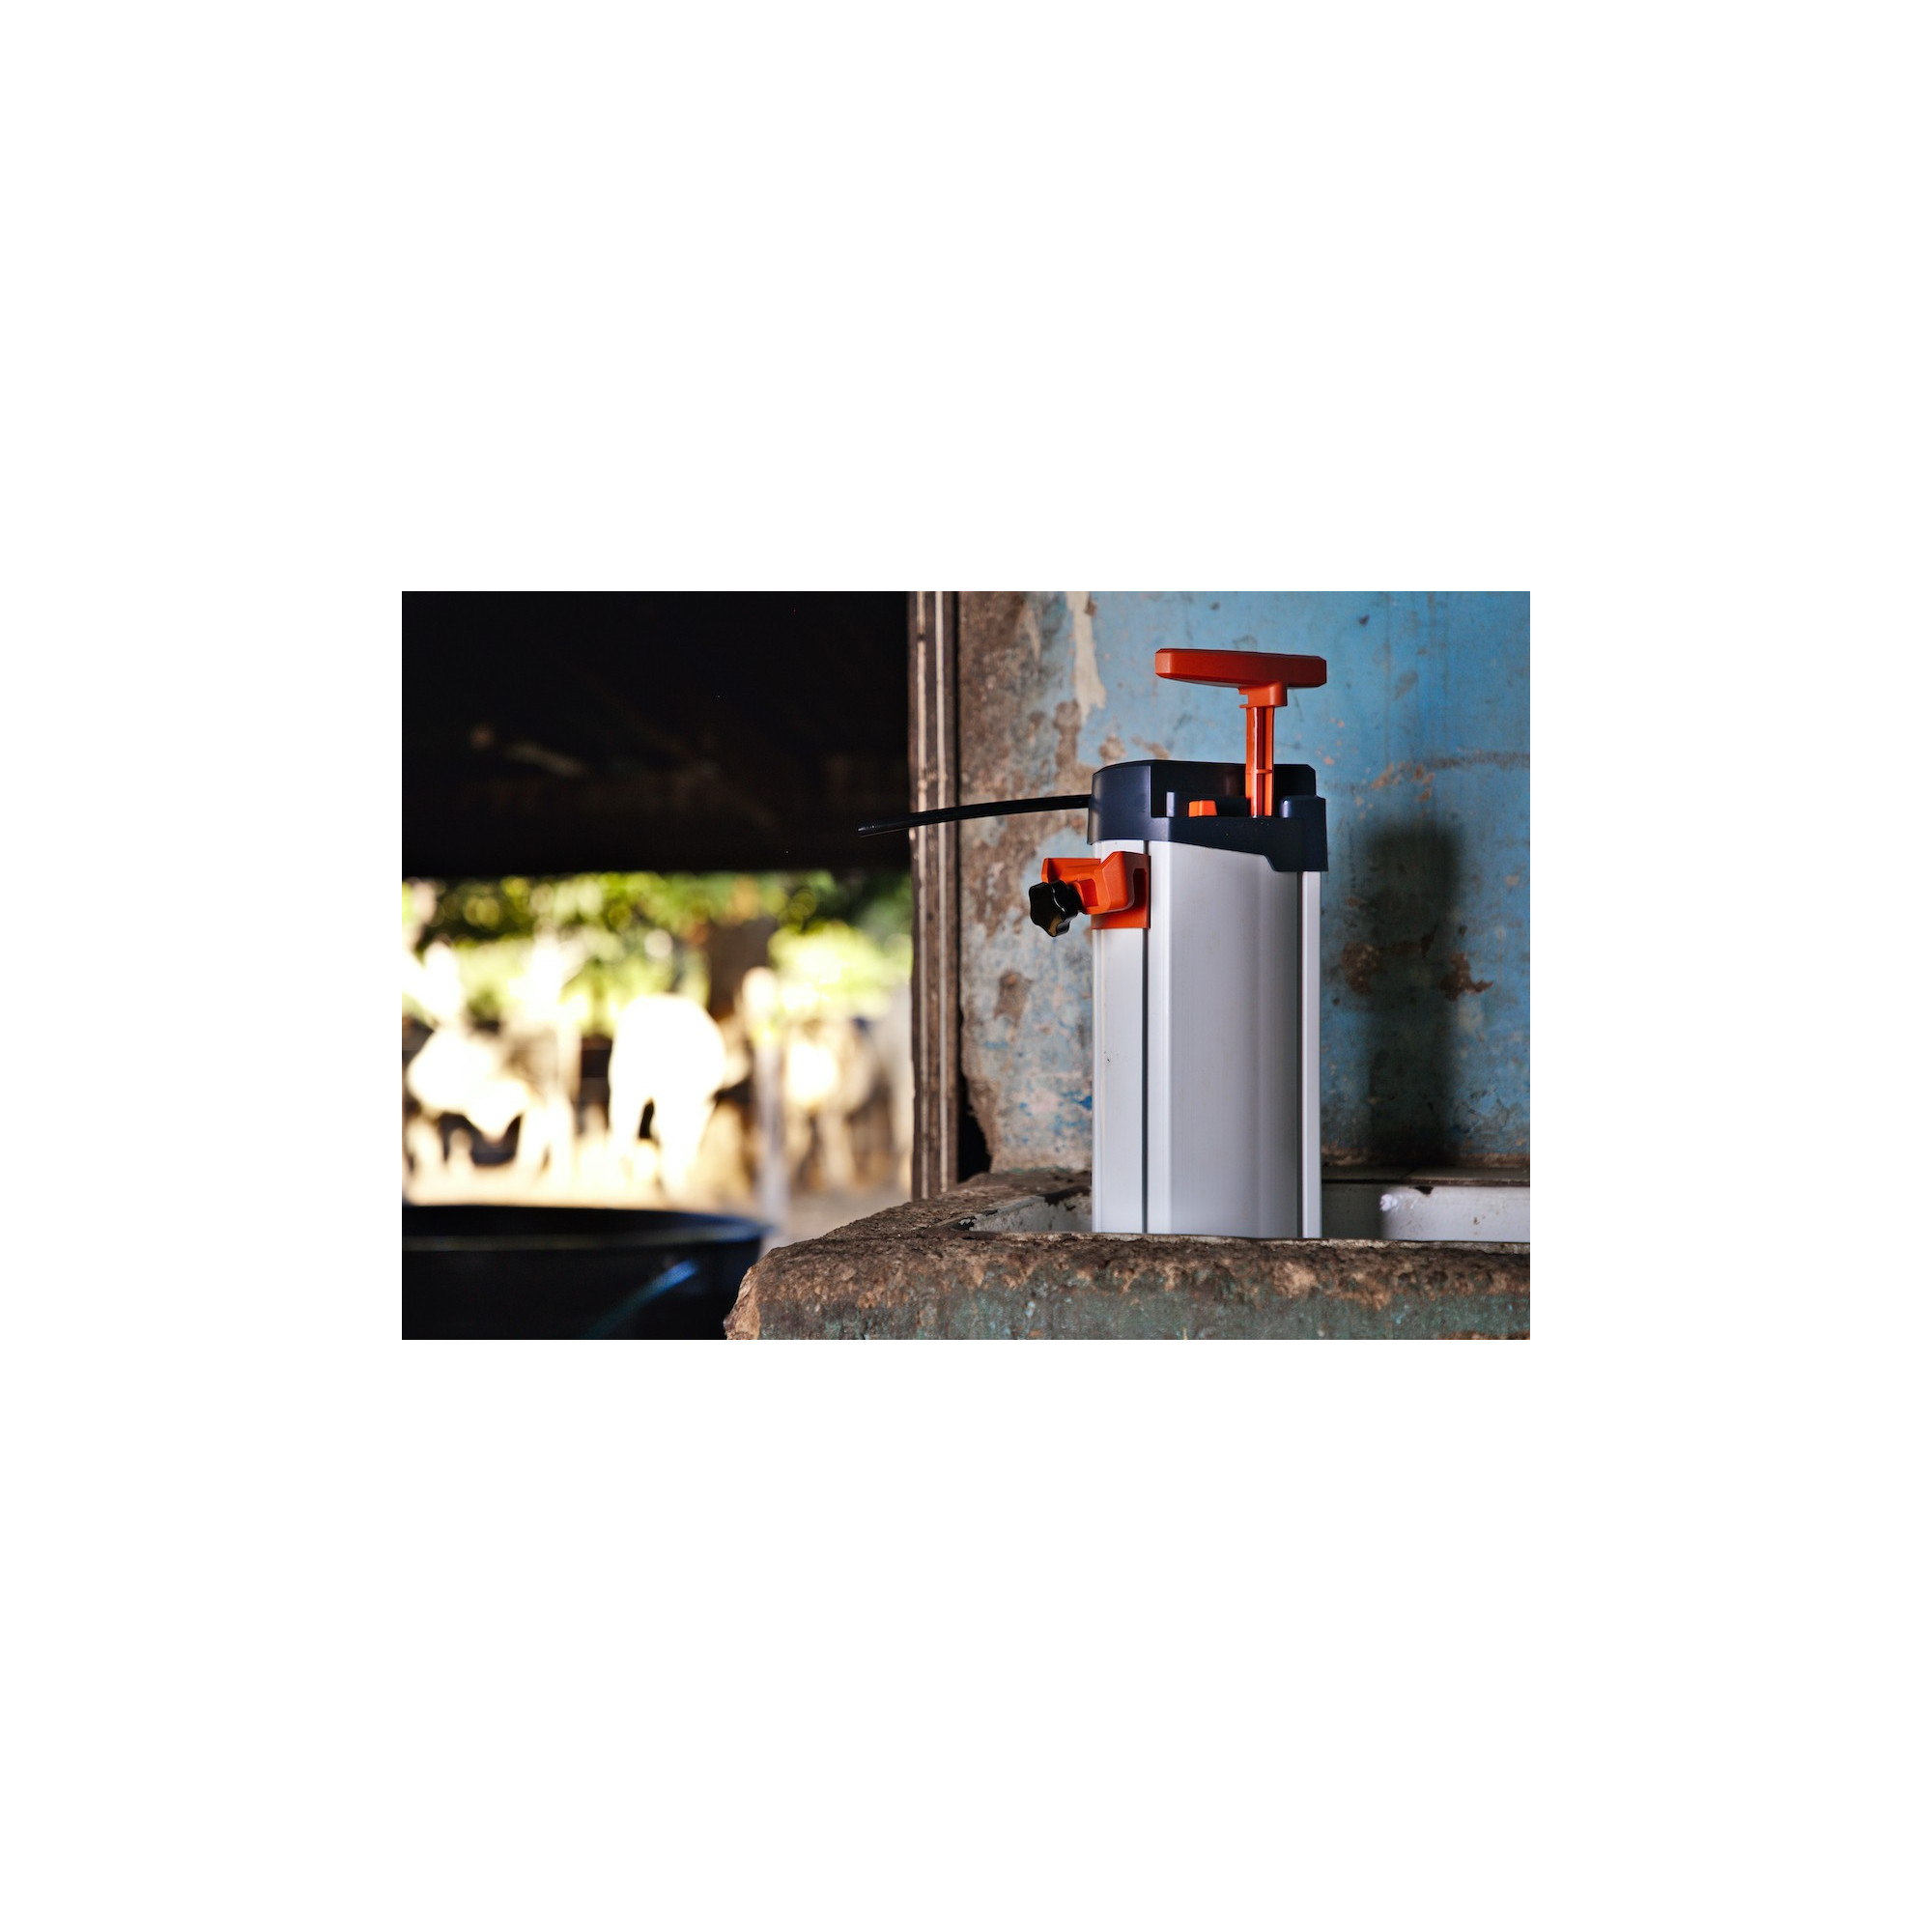 Purificateur d'eau autonome Orisa - Les filtres à eau 